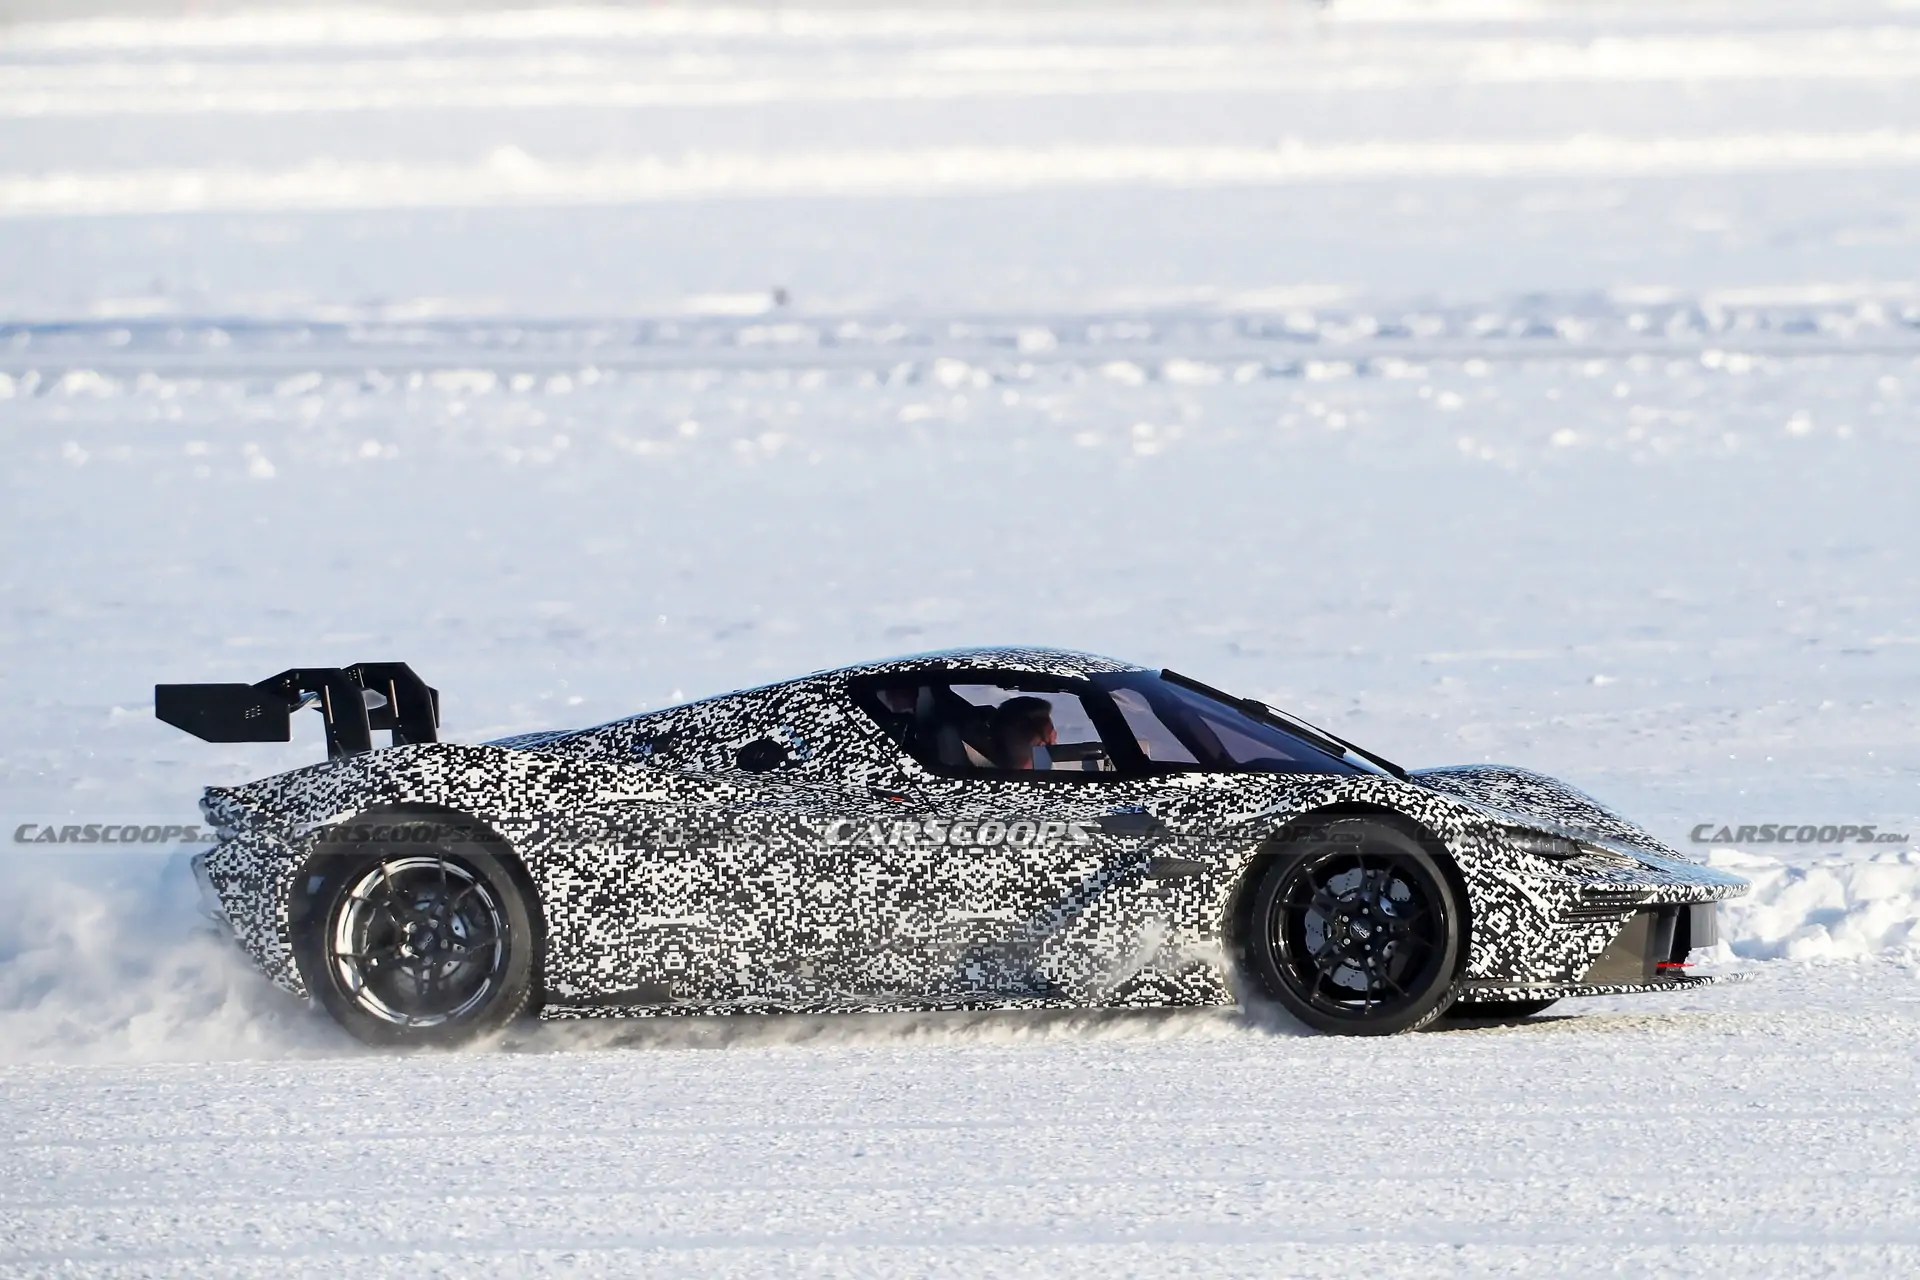 سيارة الطرق X-Bow GT2 في بيئة ثلجية تحت الاختبار 